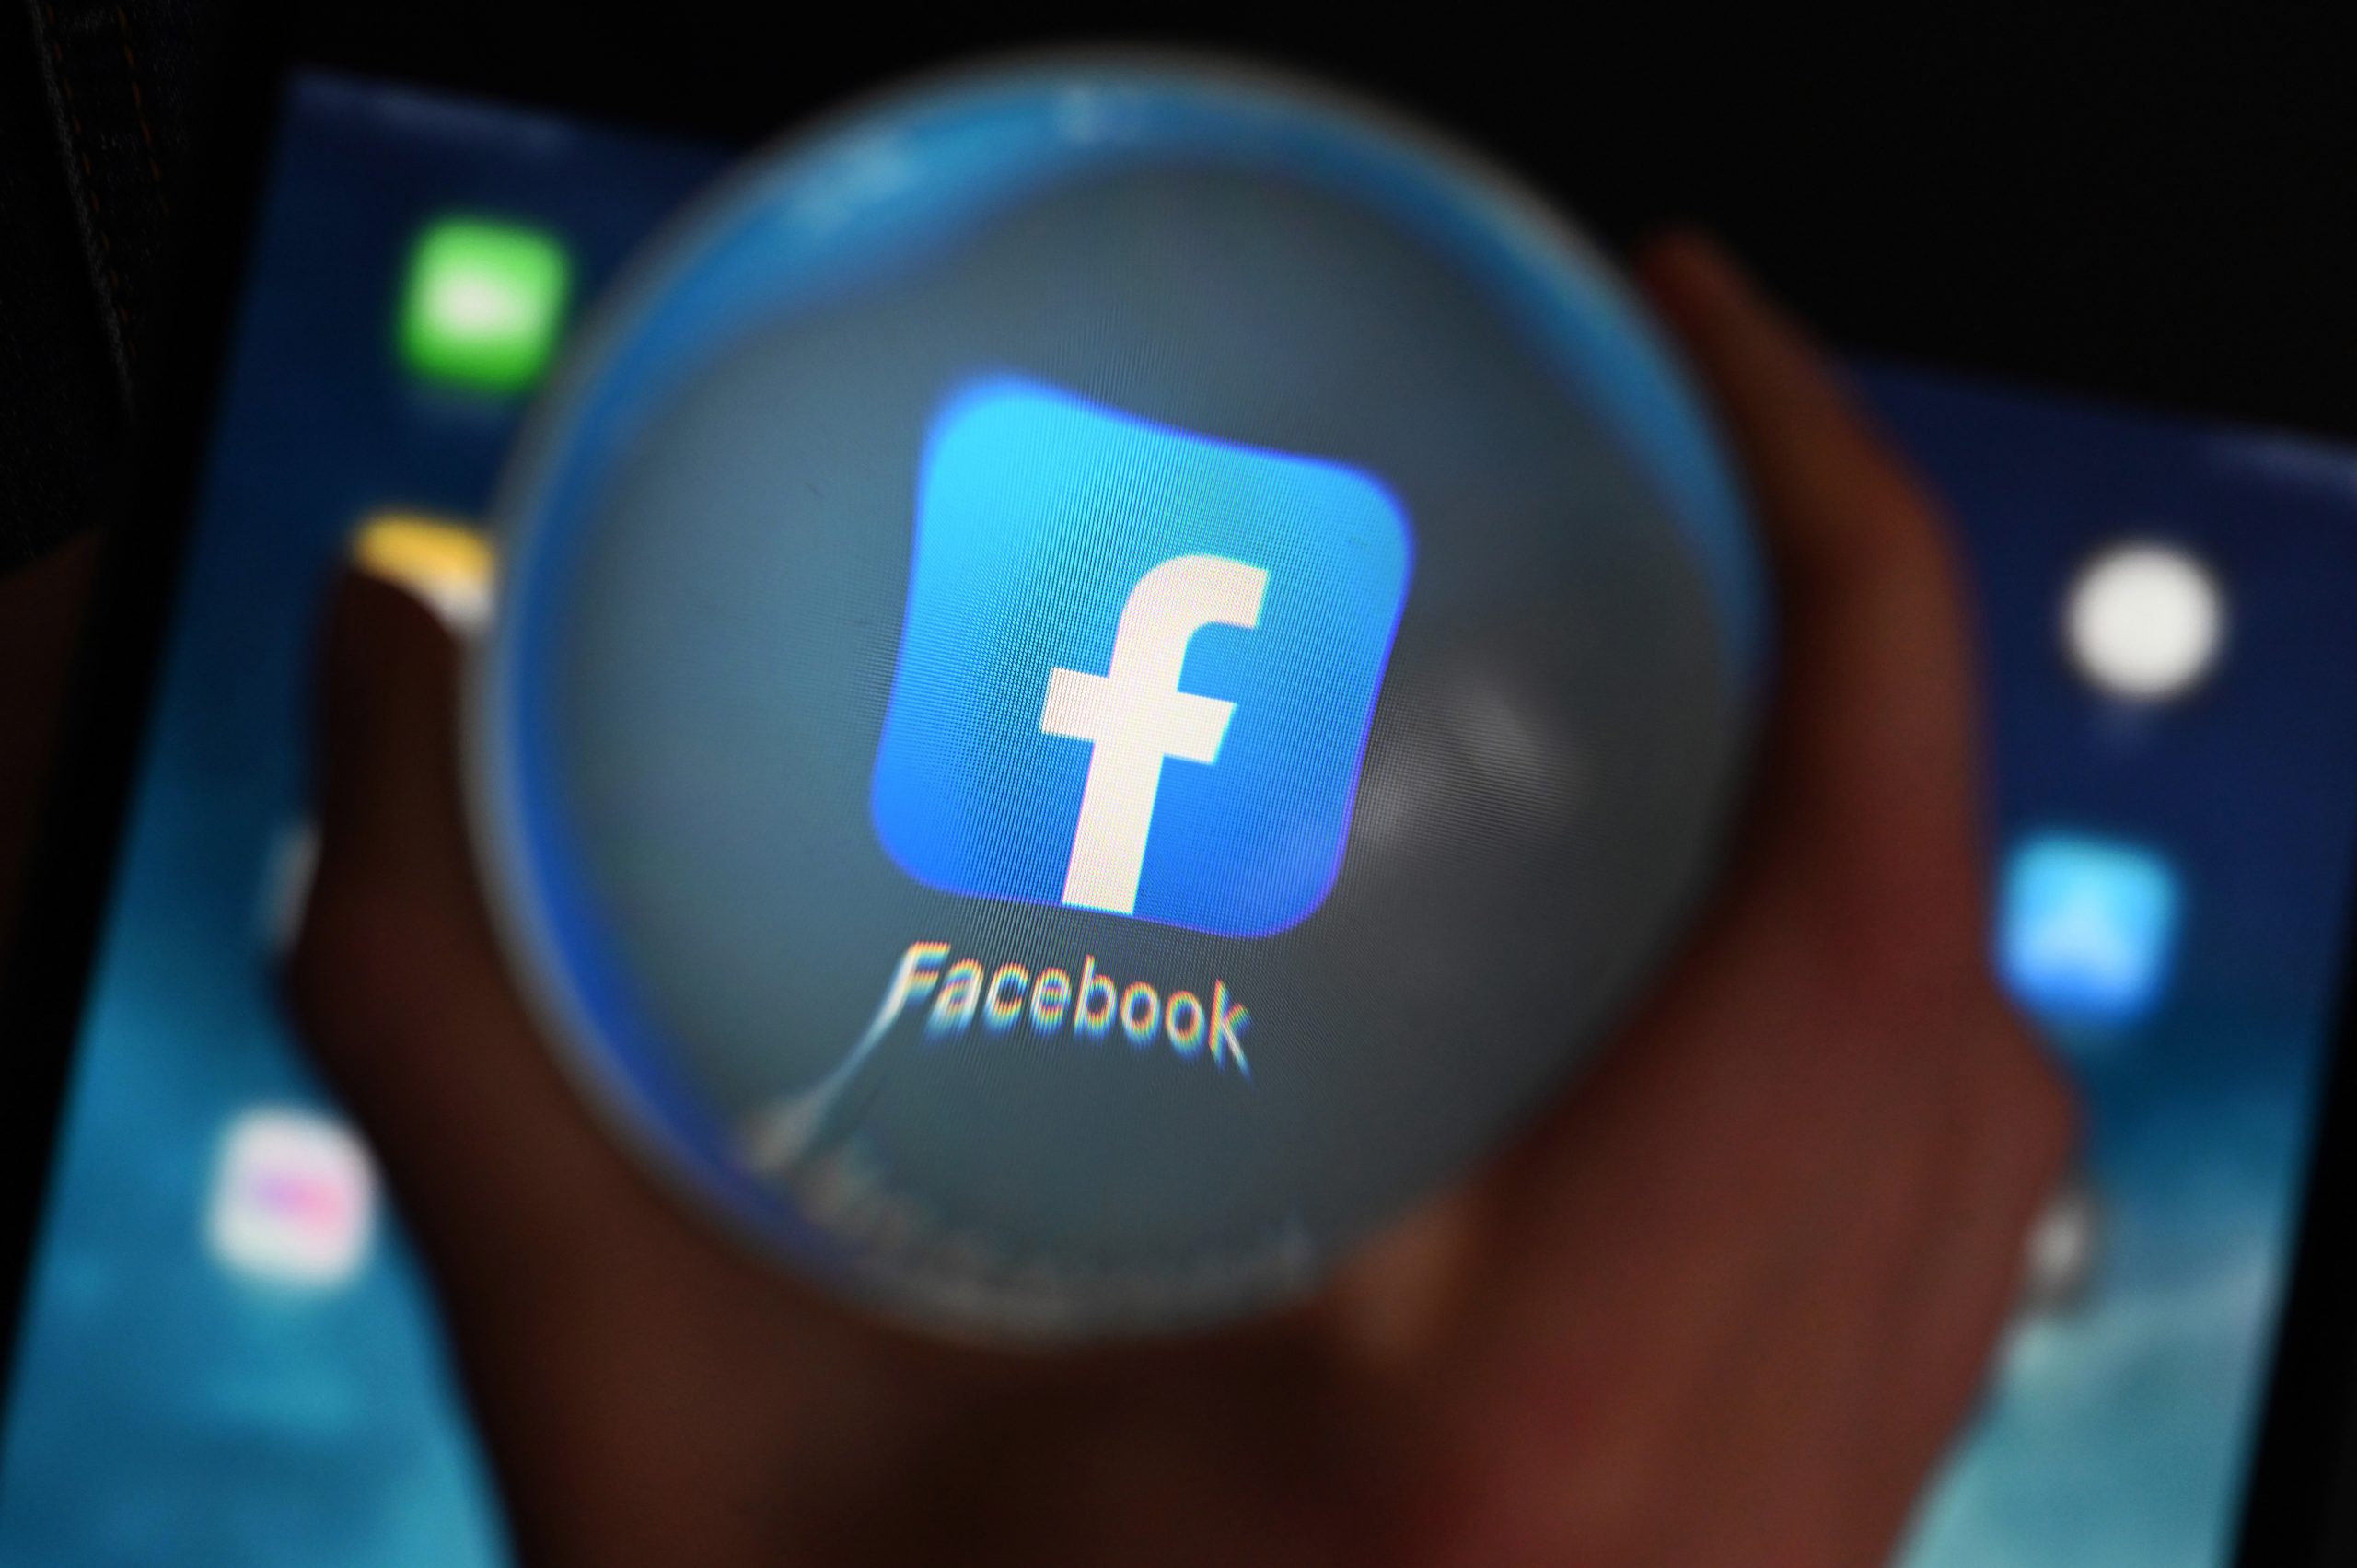 Facebook-Nutzer sollen Klarnamen benutzen – eine Maßnahme gegen Hass und Mobbing im Netz.